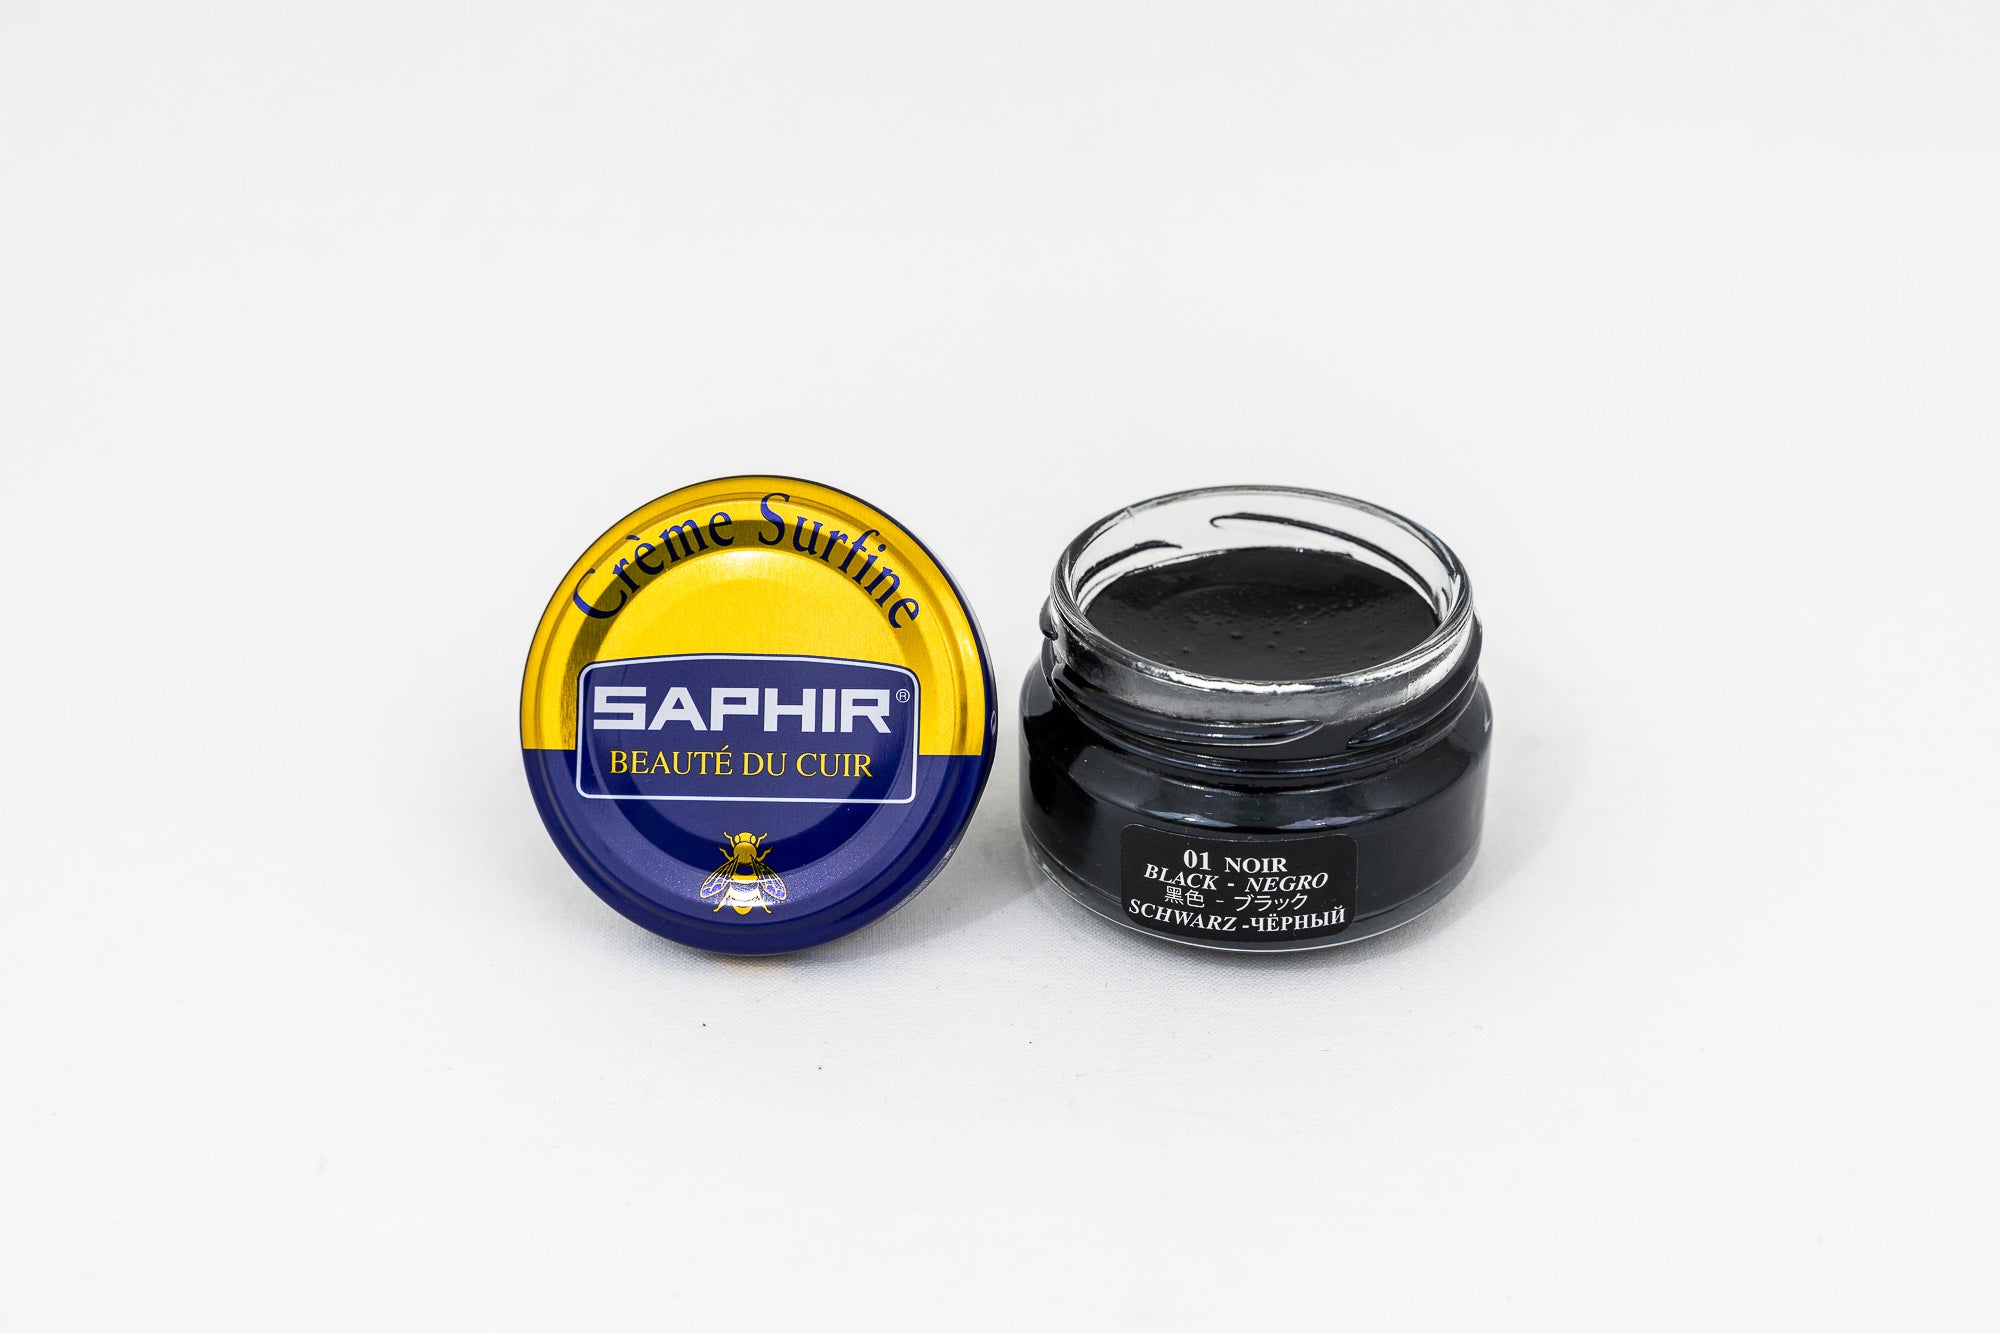 Ypson's - Crème surfine Saphir – Ypsons